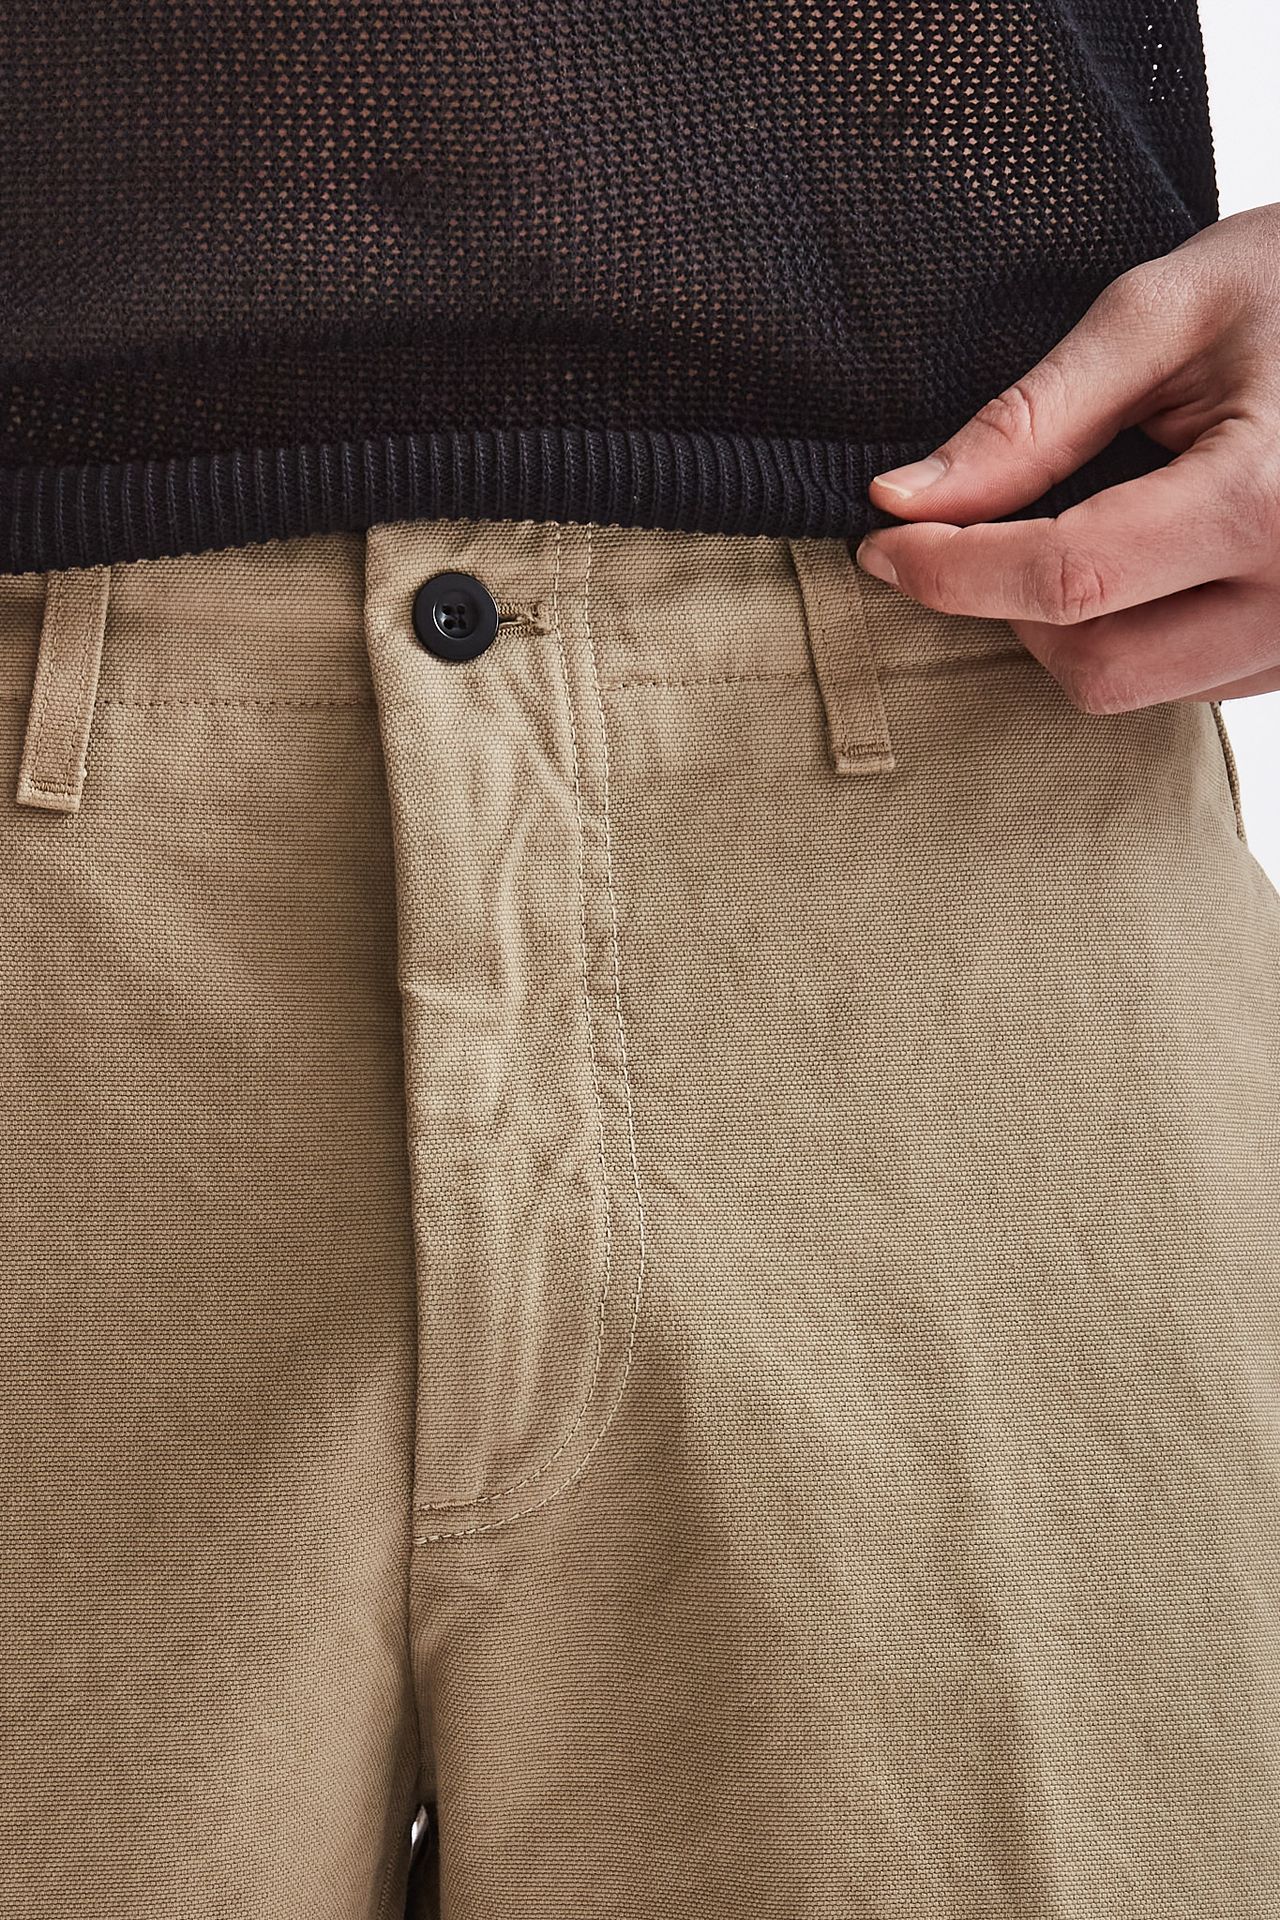 Pantalone OFF in cotone cammello